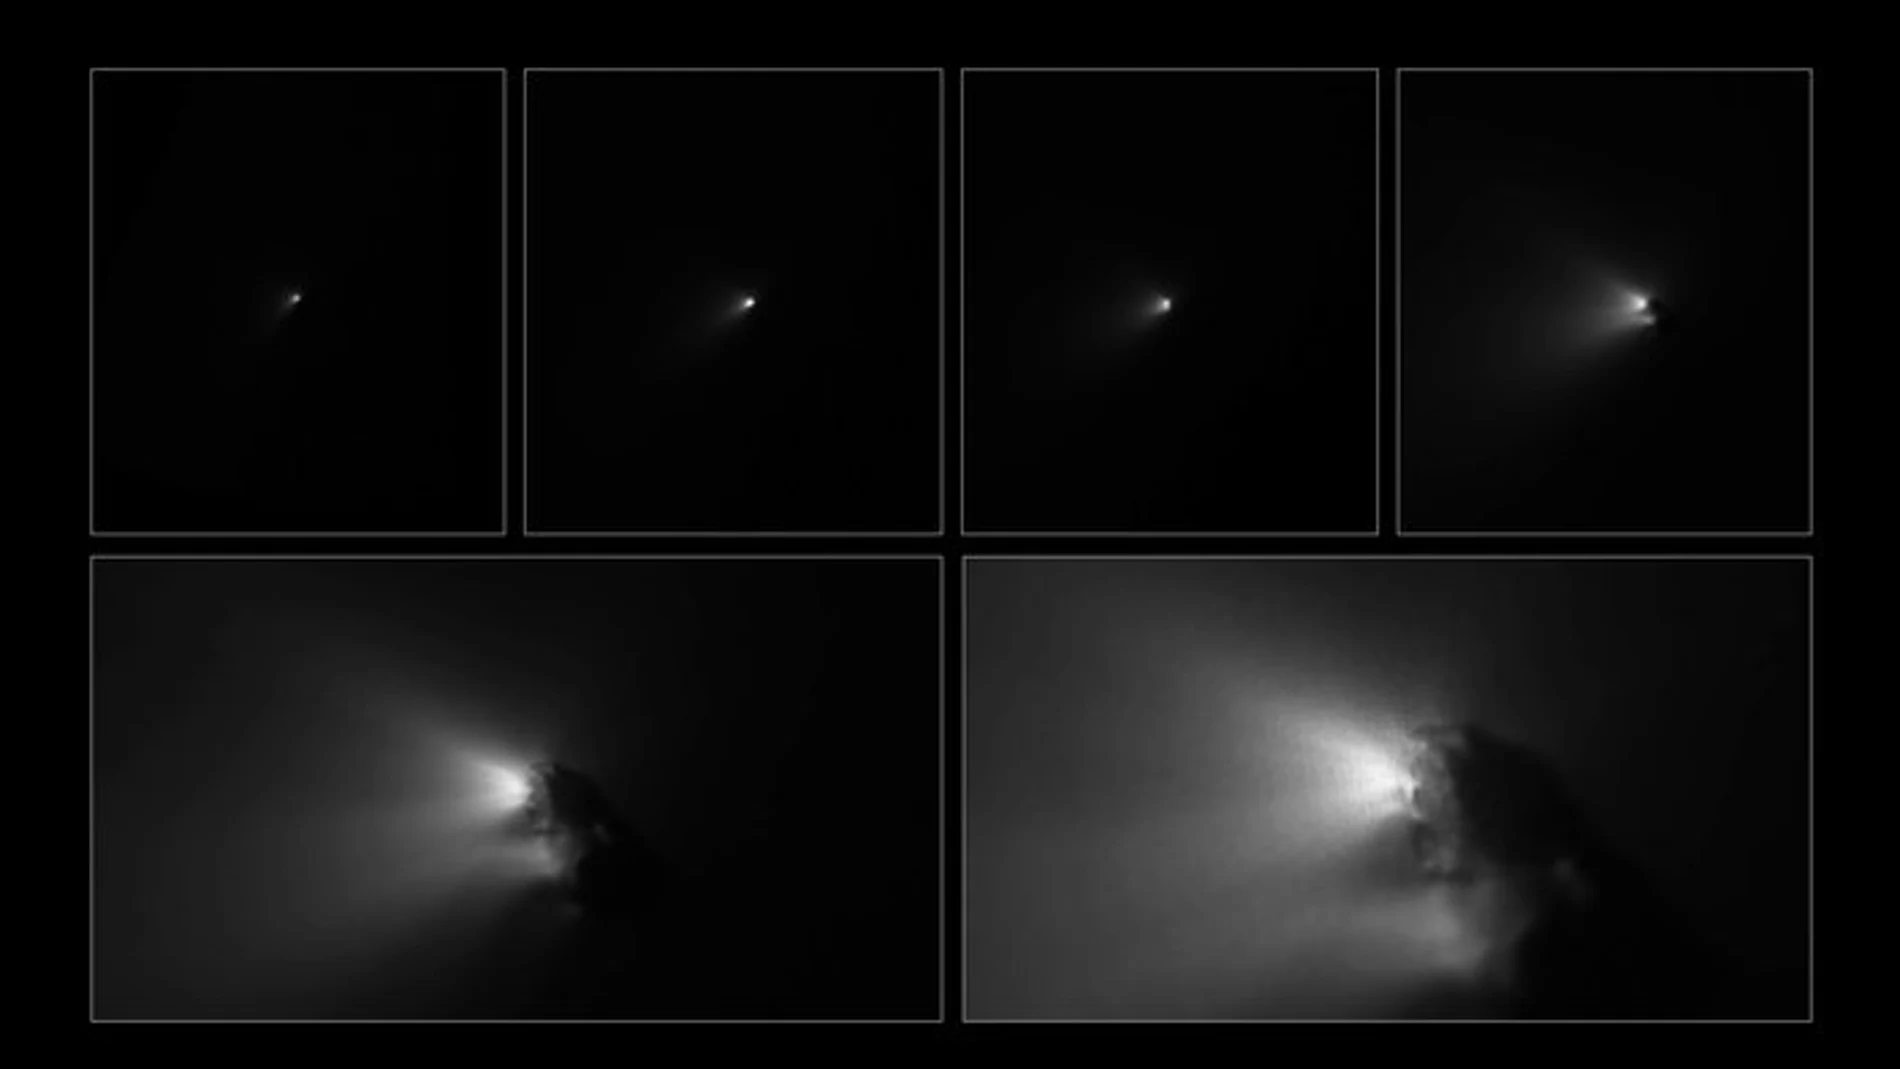 Seis momentos de la maniobra de aproximación al cometa Halley